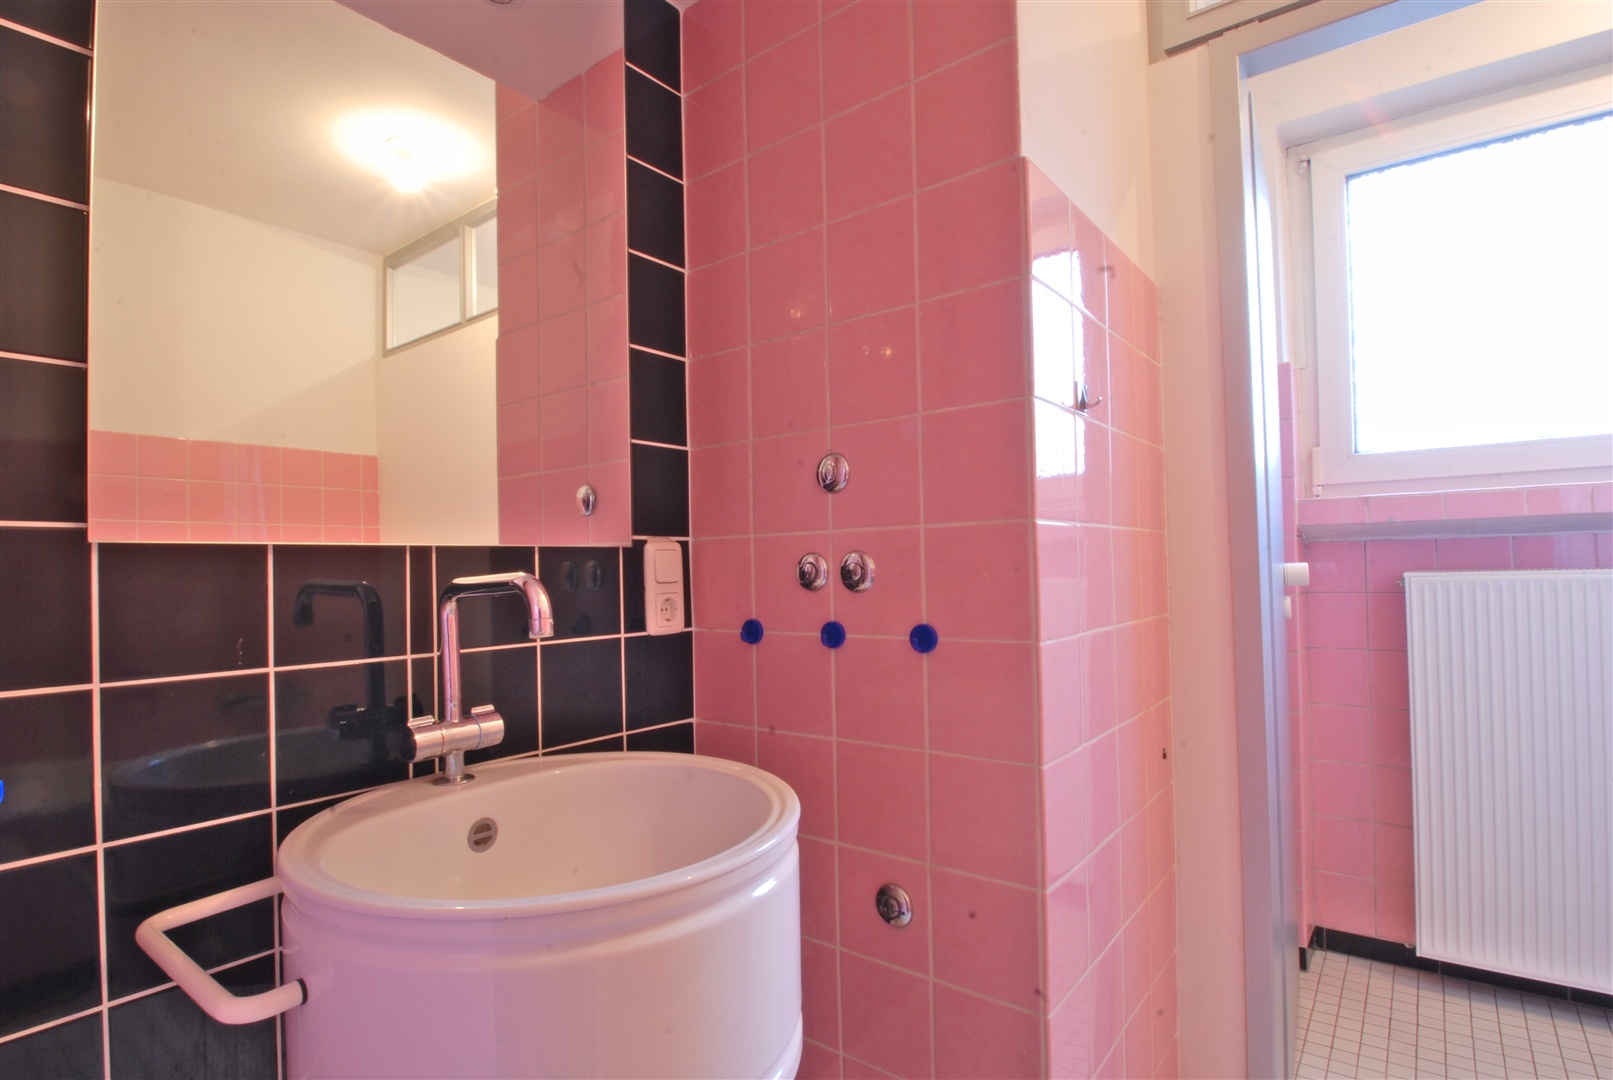 kleines badezimmer, sicherlich renovierungsbedüftig - Oliver Reifferscheid - Immobilienmakler Darmstadt